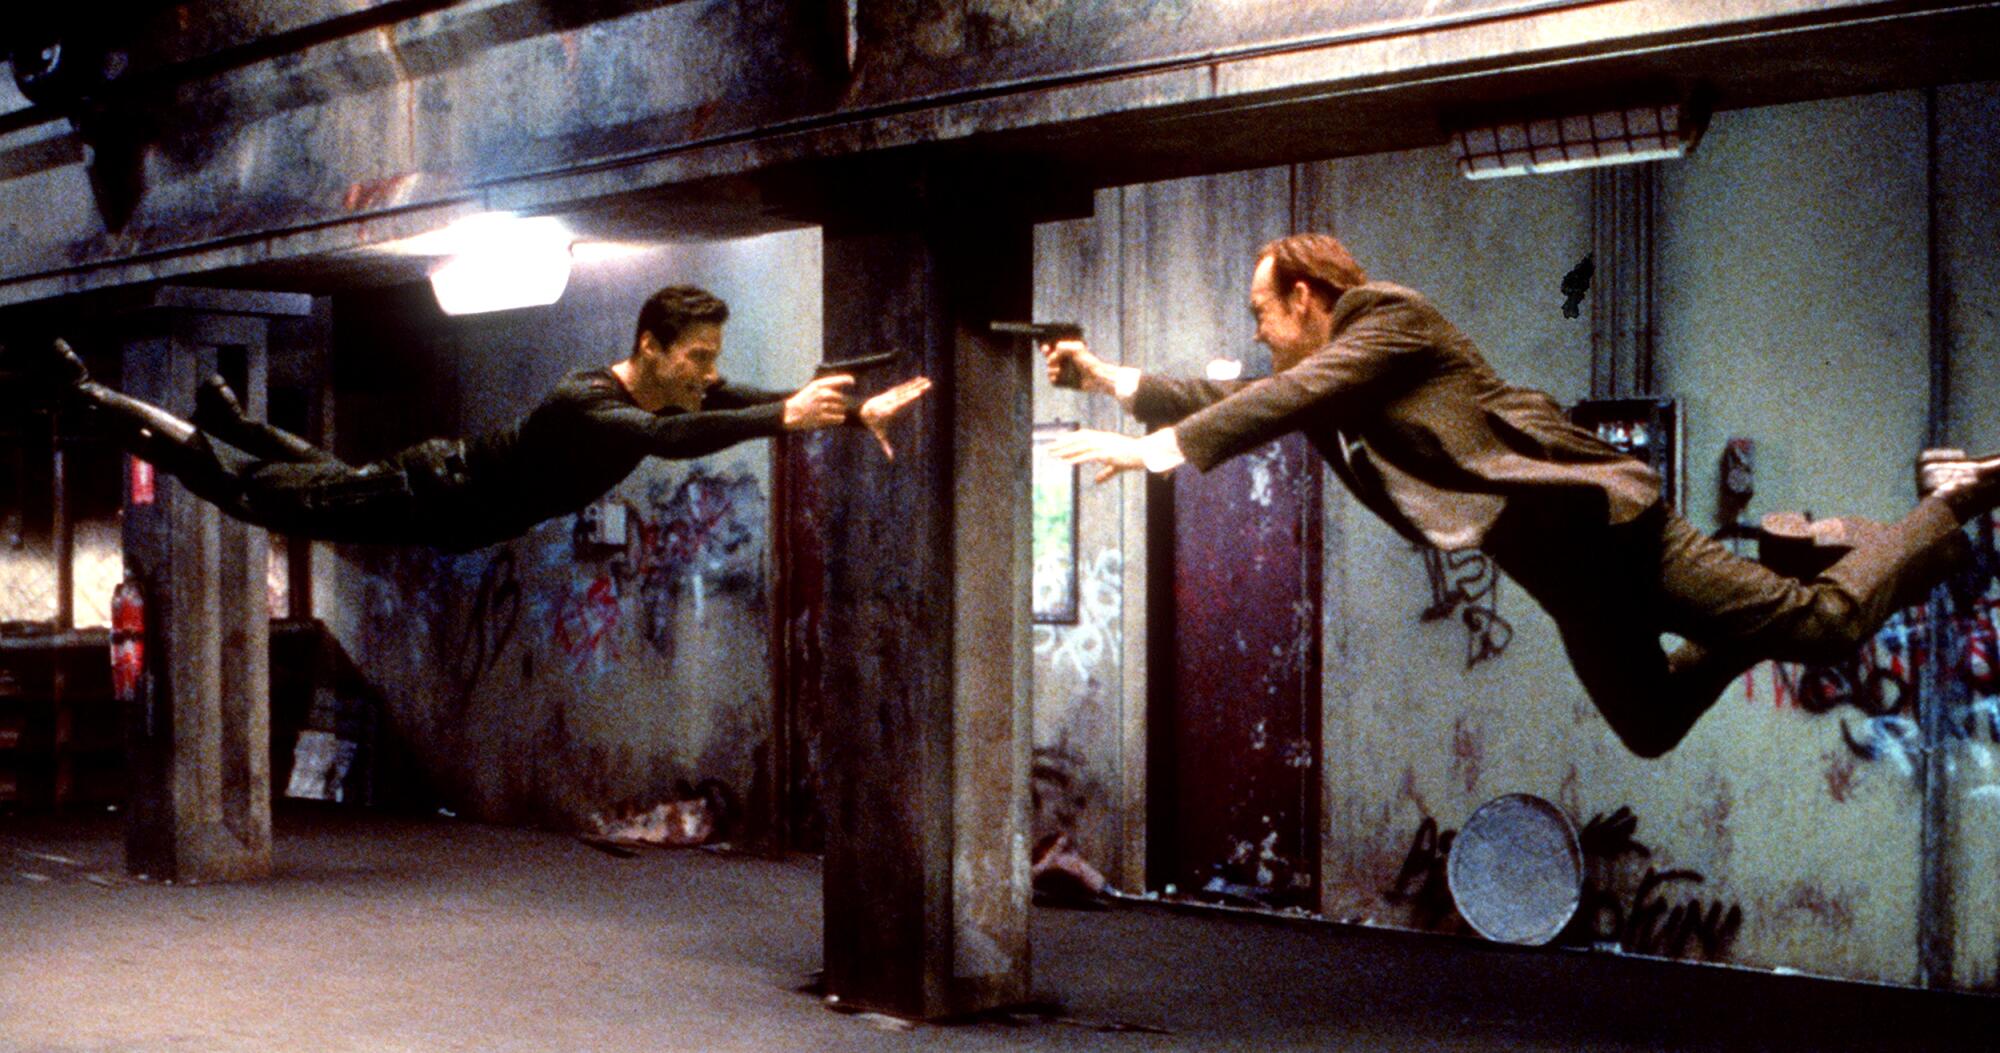 Neo (Keanu Reeves) et l'agent Smith (Hugo Weaving) s'affrontent dans un "La matrice"